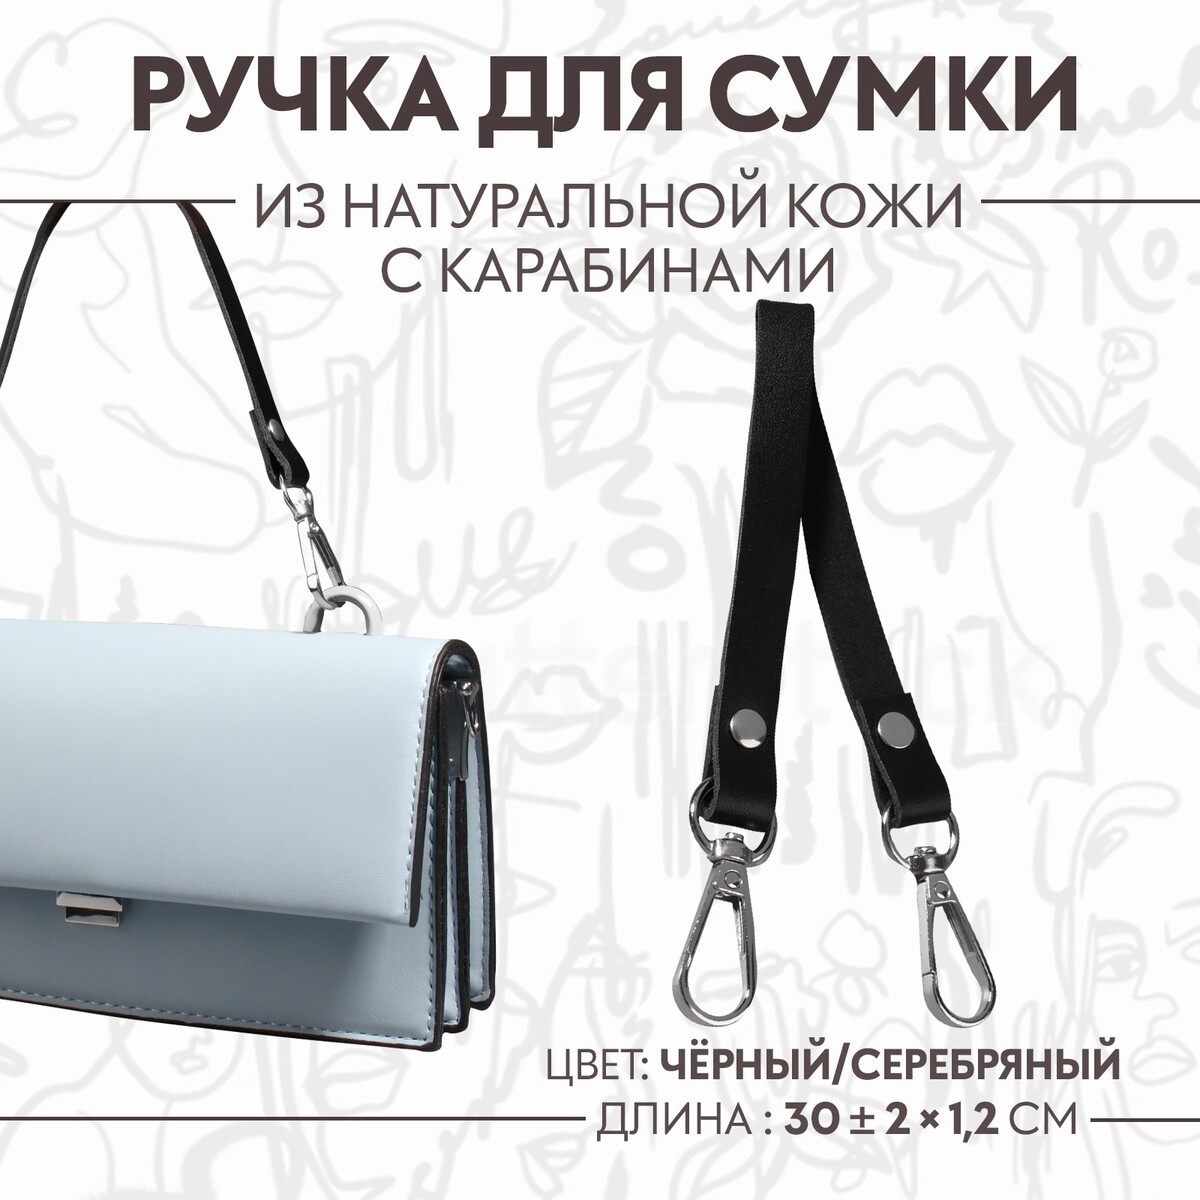 Ручка для сумки из натуральной кожи, с карабинами, 30 ± 2 см × 1,2 см, цвет черный/серебряный